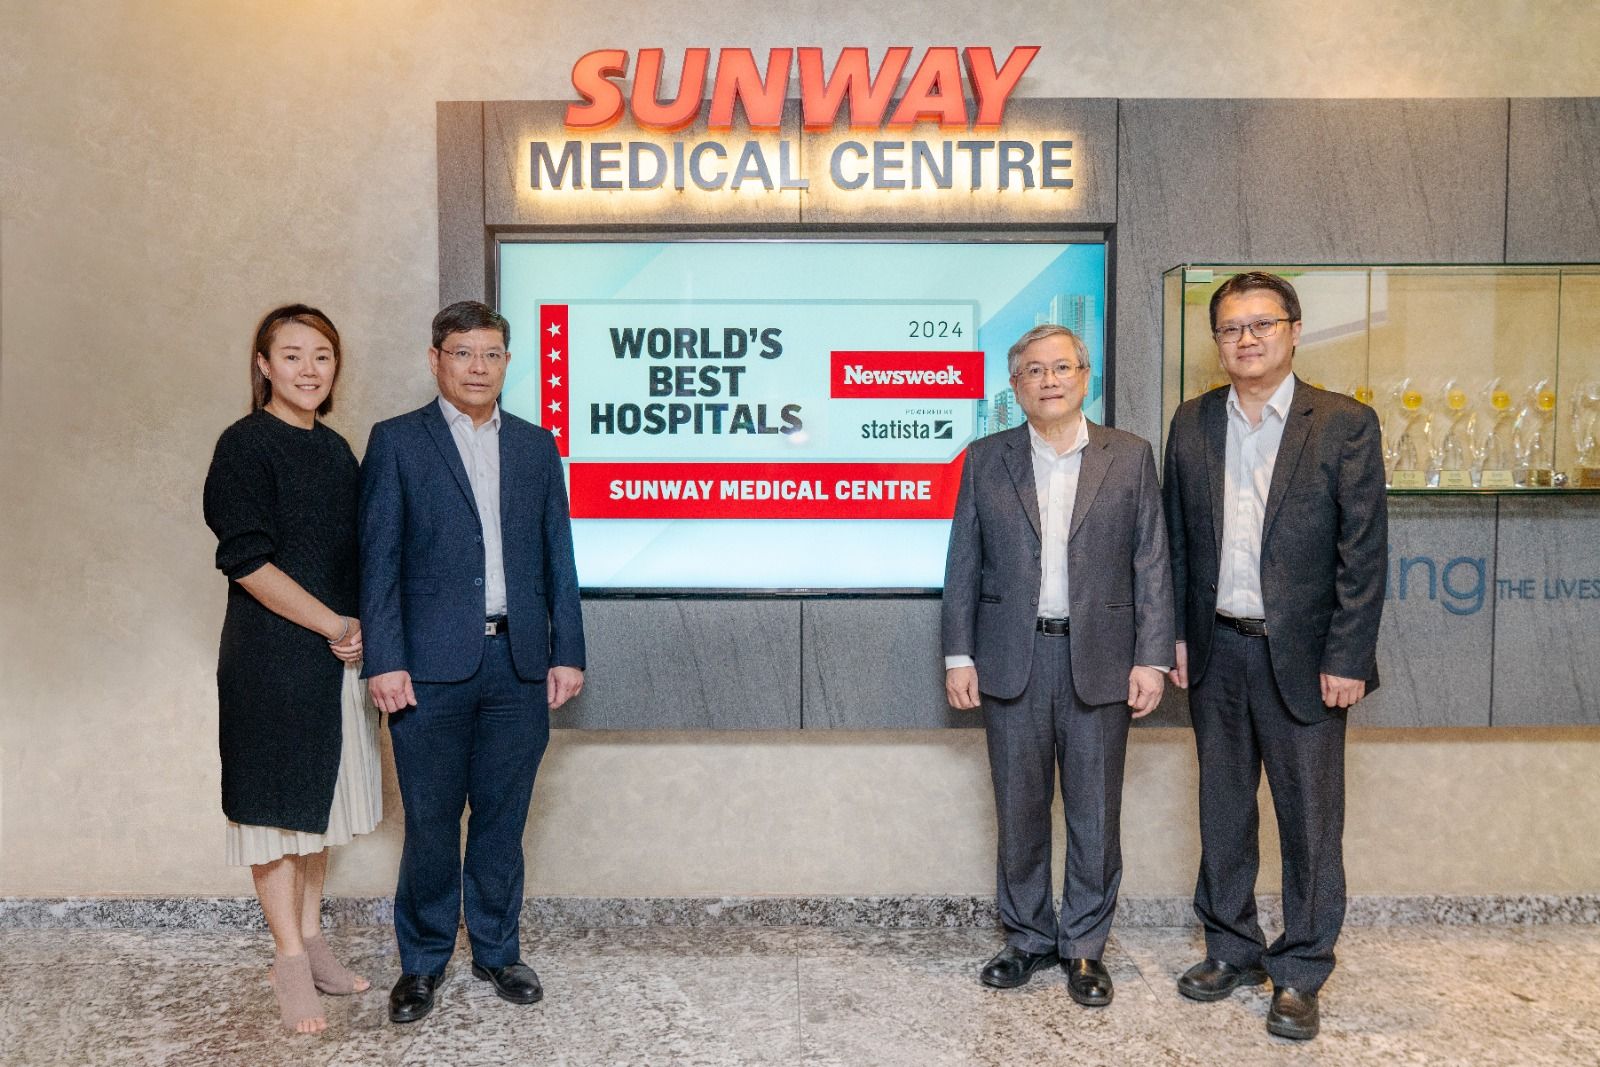 Sunway Medical Centre Masuk Daftar Rumah Sakit Terbaik di Dunia Versi Newsweek